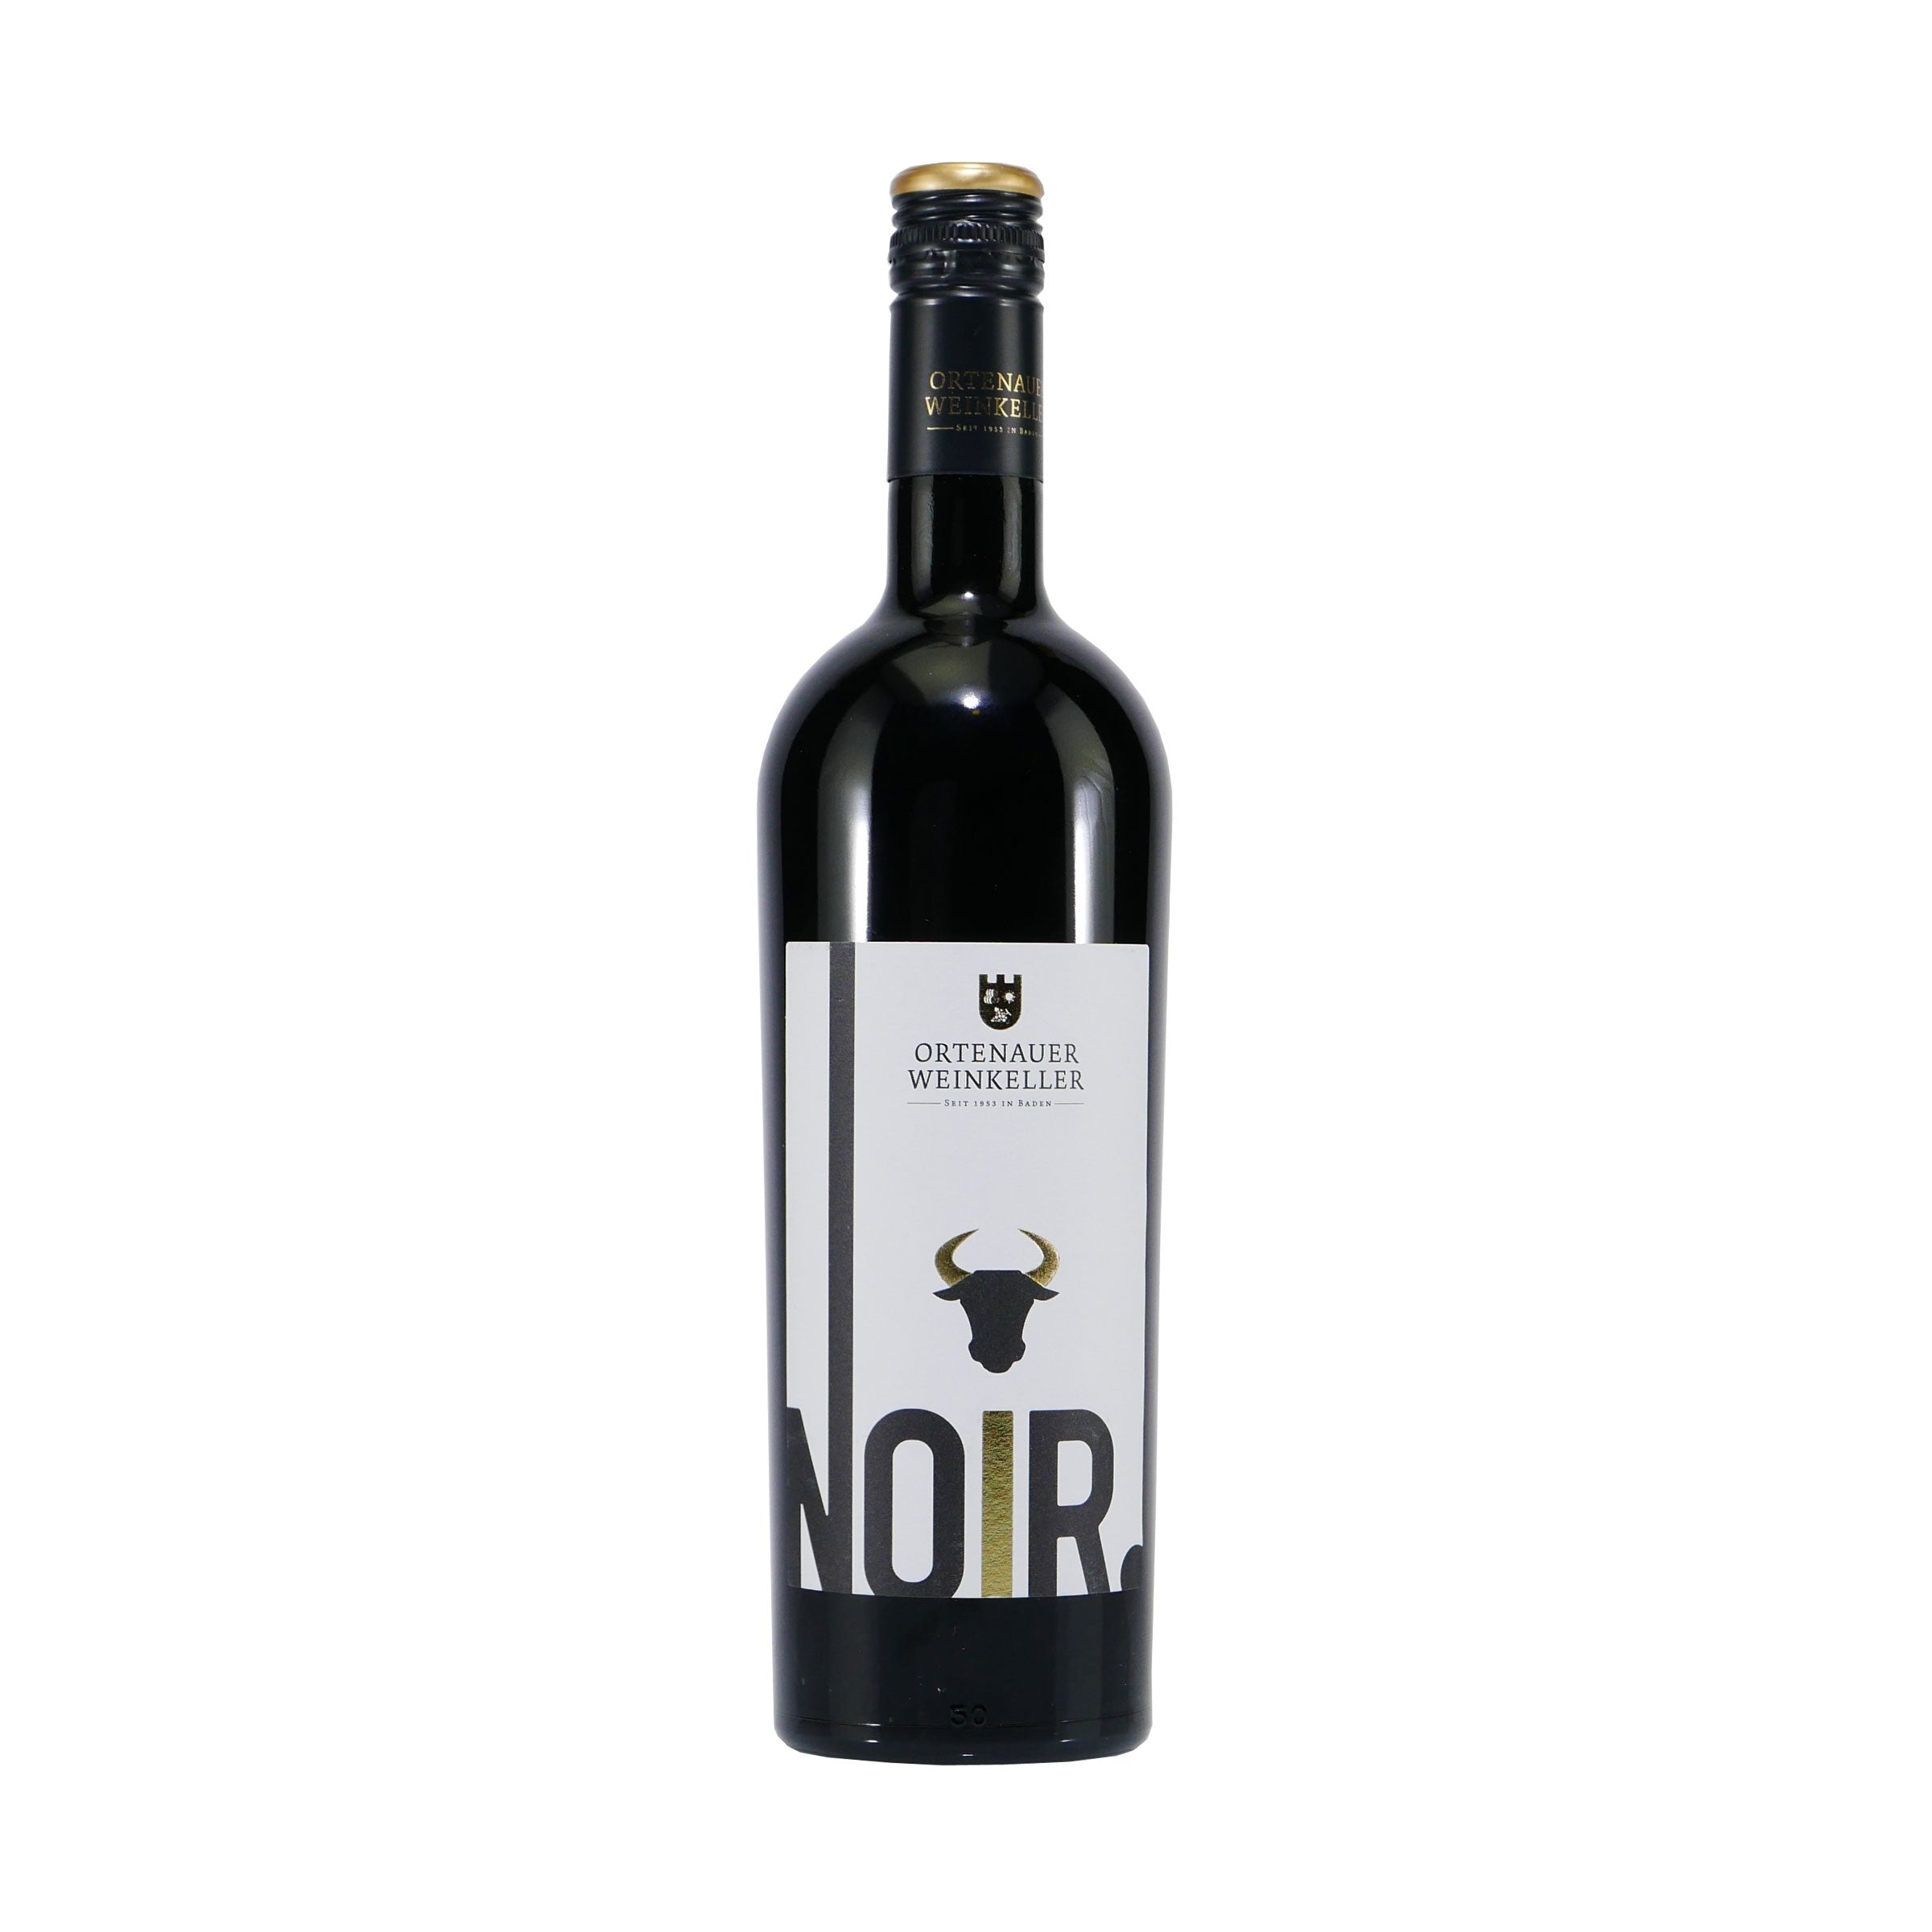 Pinot Noir & Merlot Rotwein (6 x 0,75L)